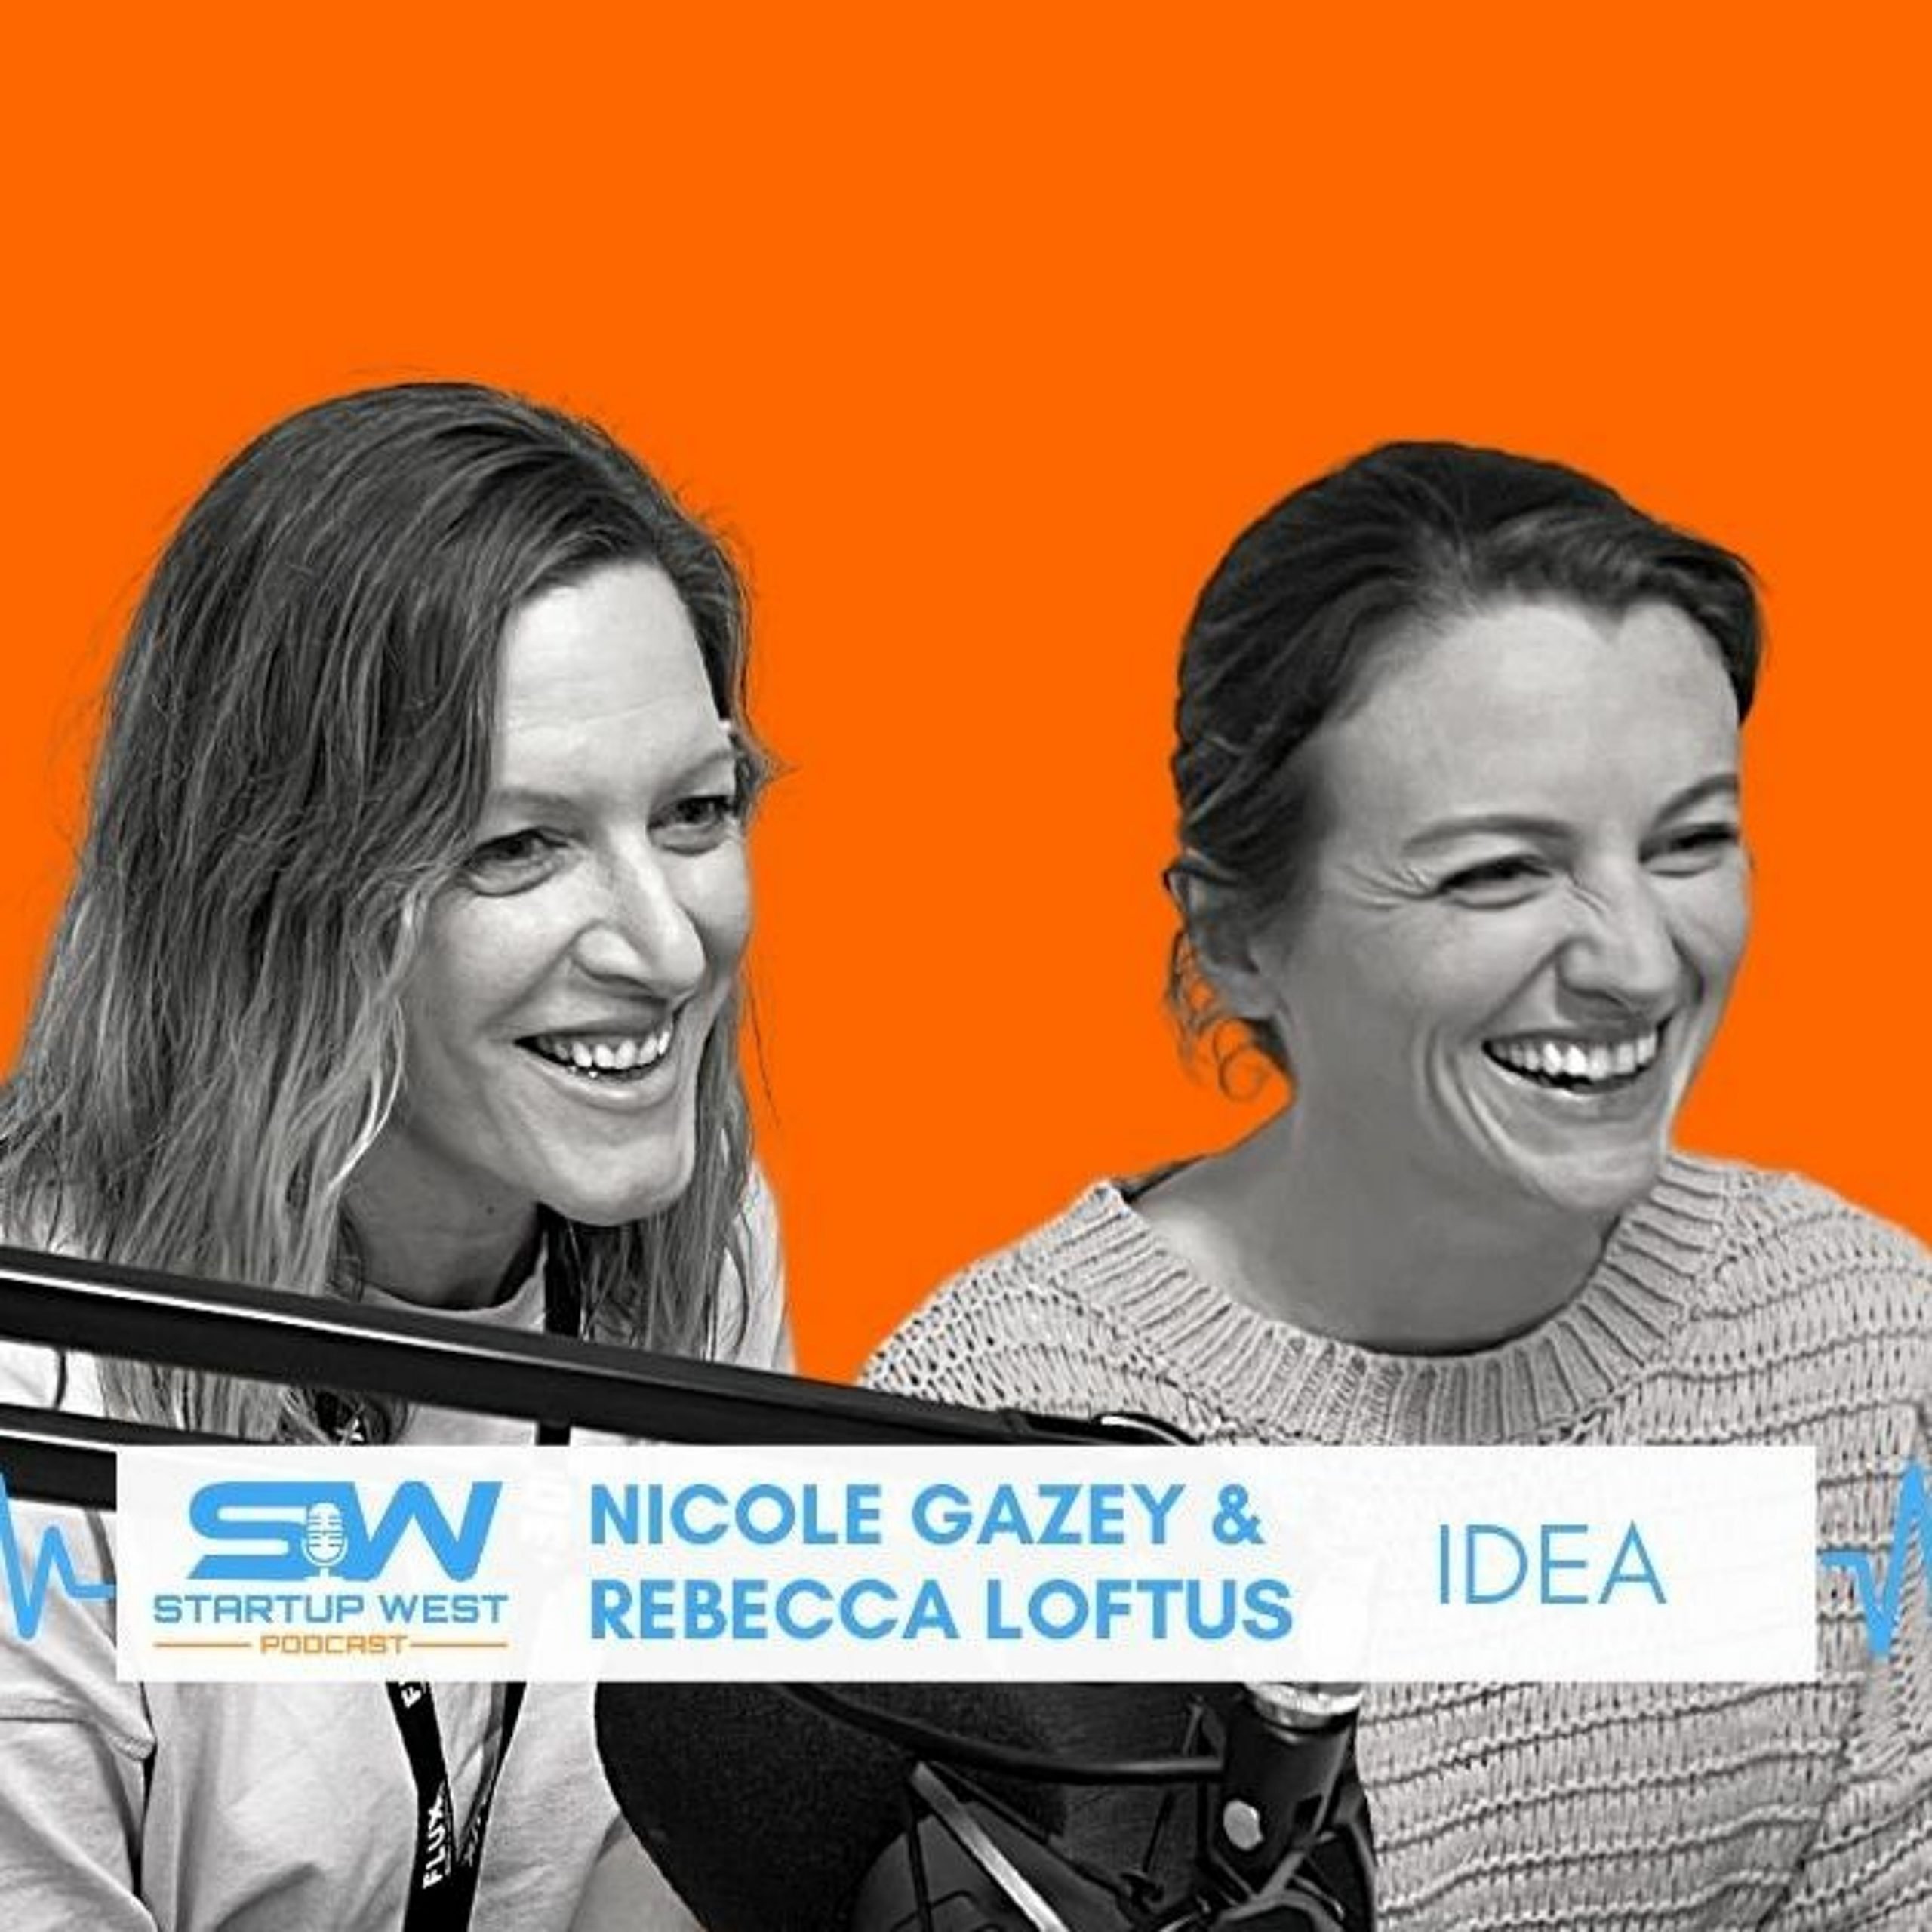 77. Nicole Gazey & Rebecca Loftus – IDEA